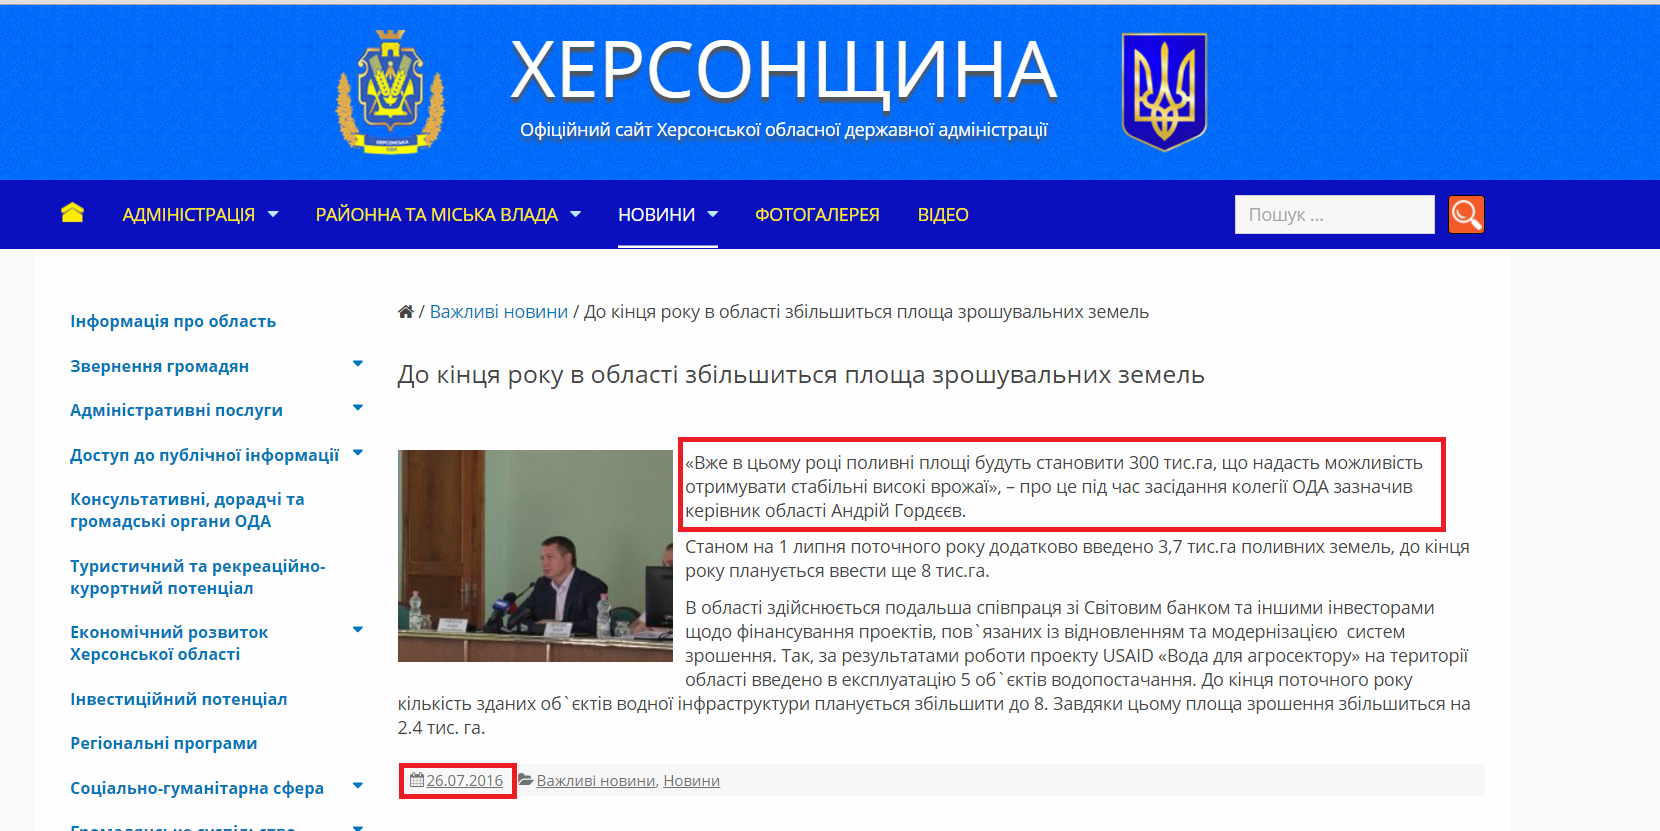 http://khoda.gov.ua/do-kincya-roku-v-oblasti-zbilshitsya-ploshha-zroshuvalnix-zemel/